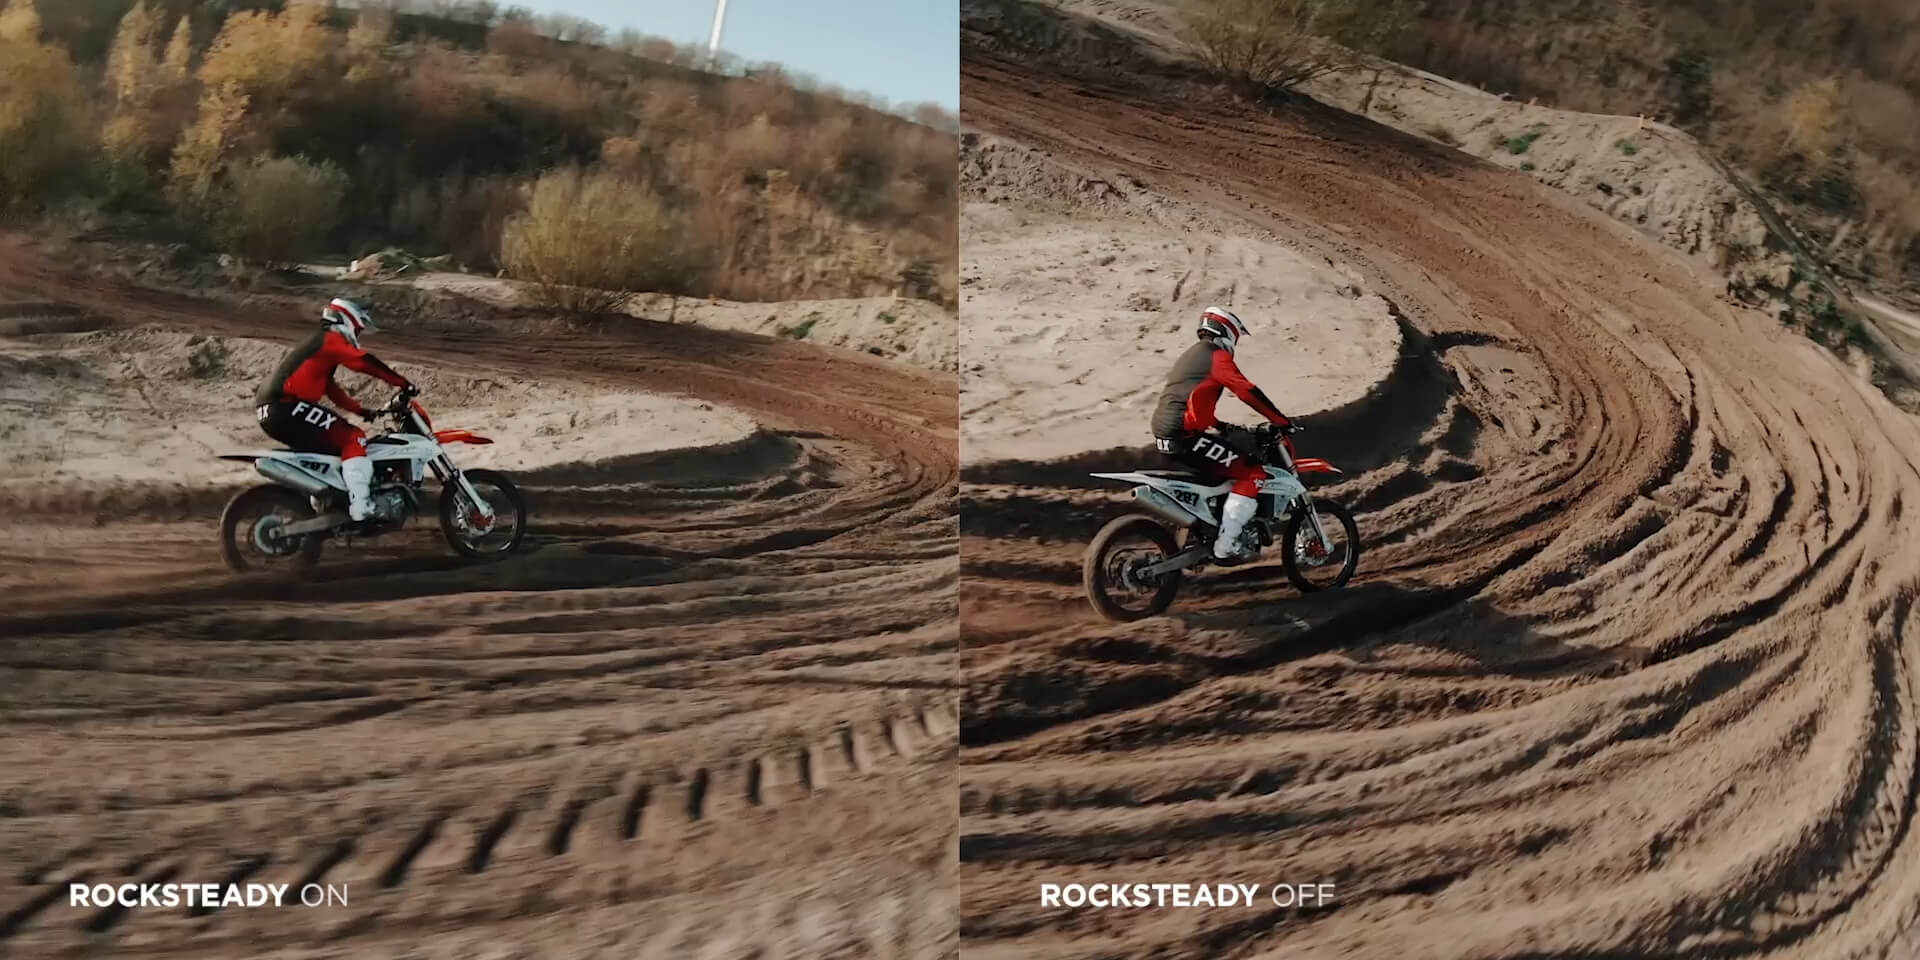 Thuật toán ổn định hình ảnh RockSteady hỗ trợ cải thiện chất lượng video footage